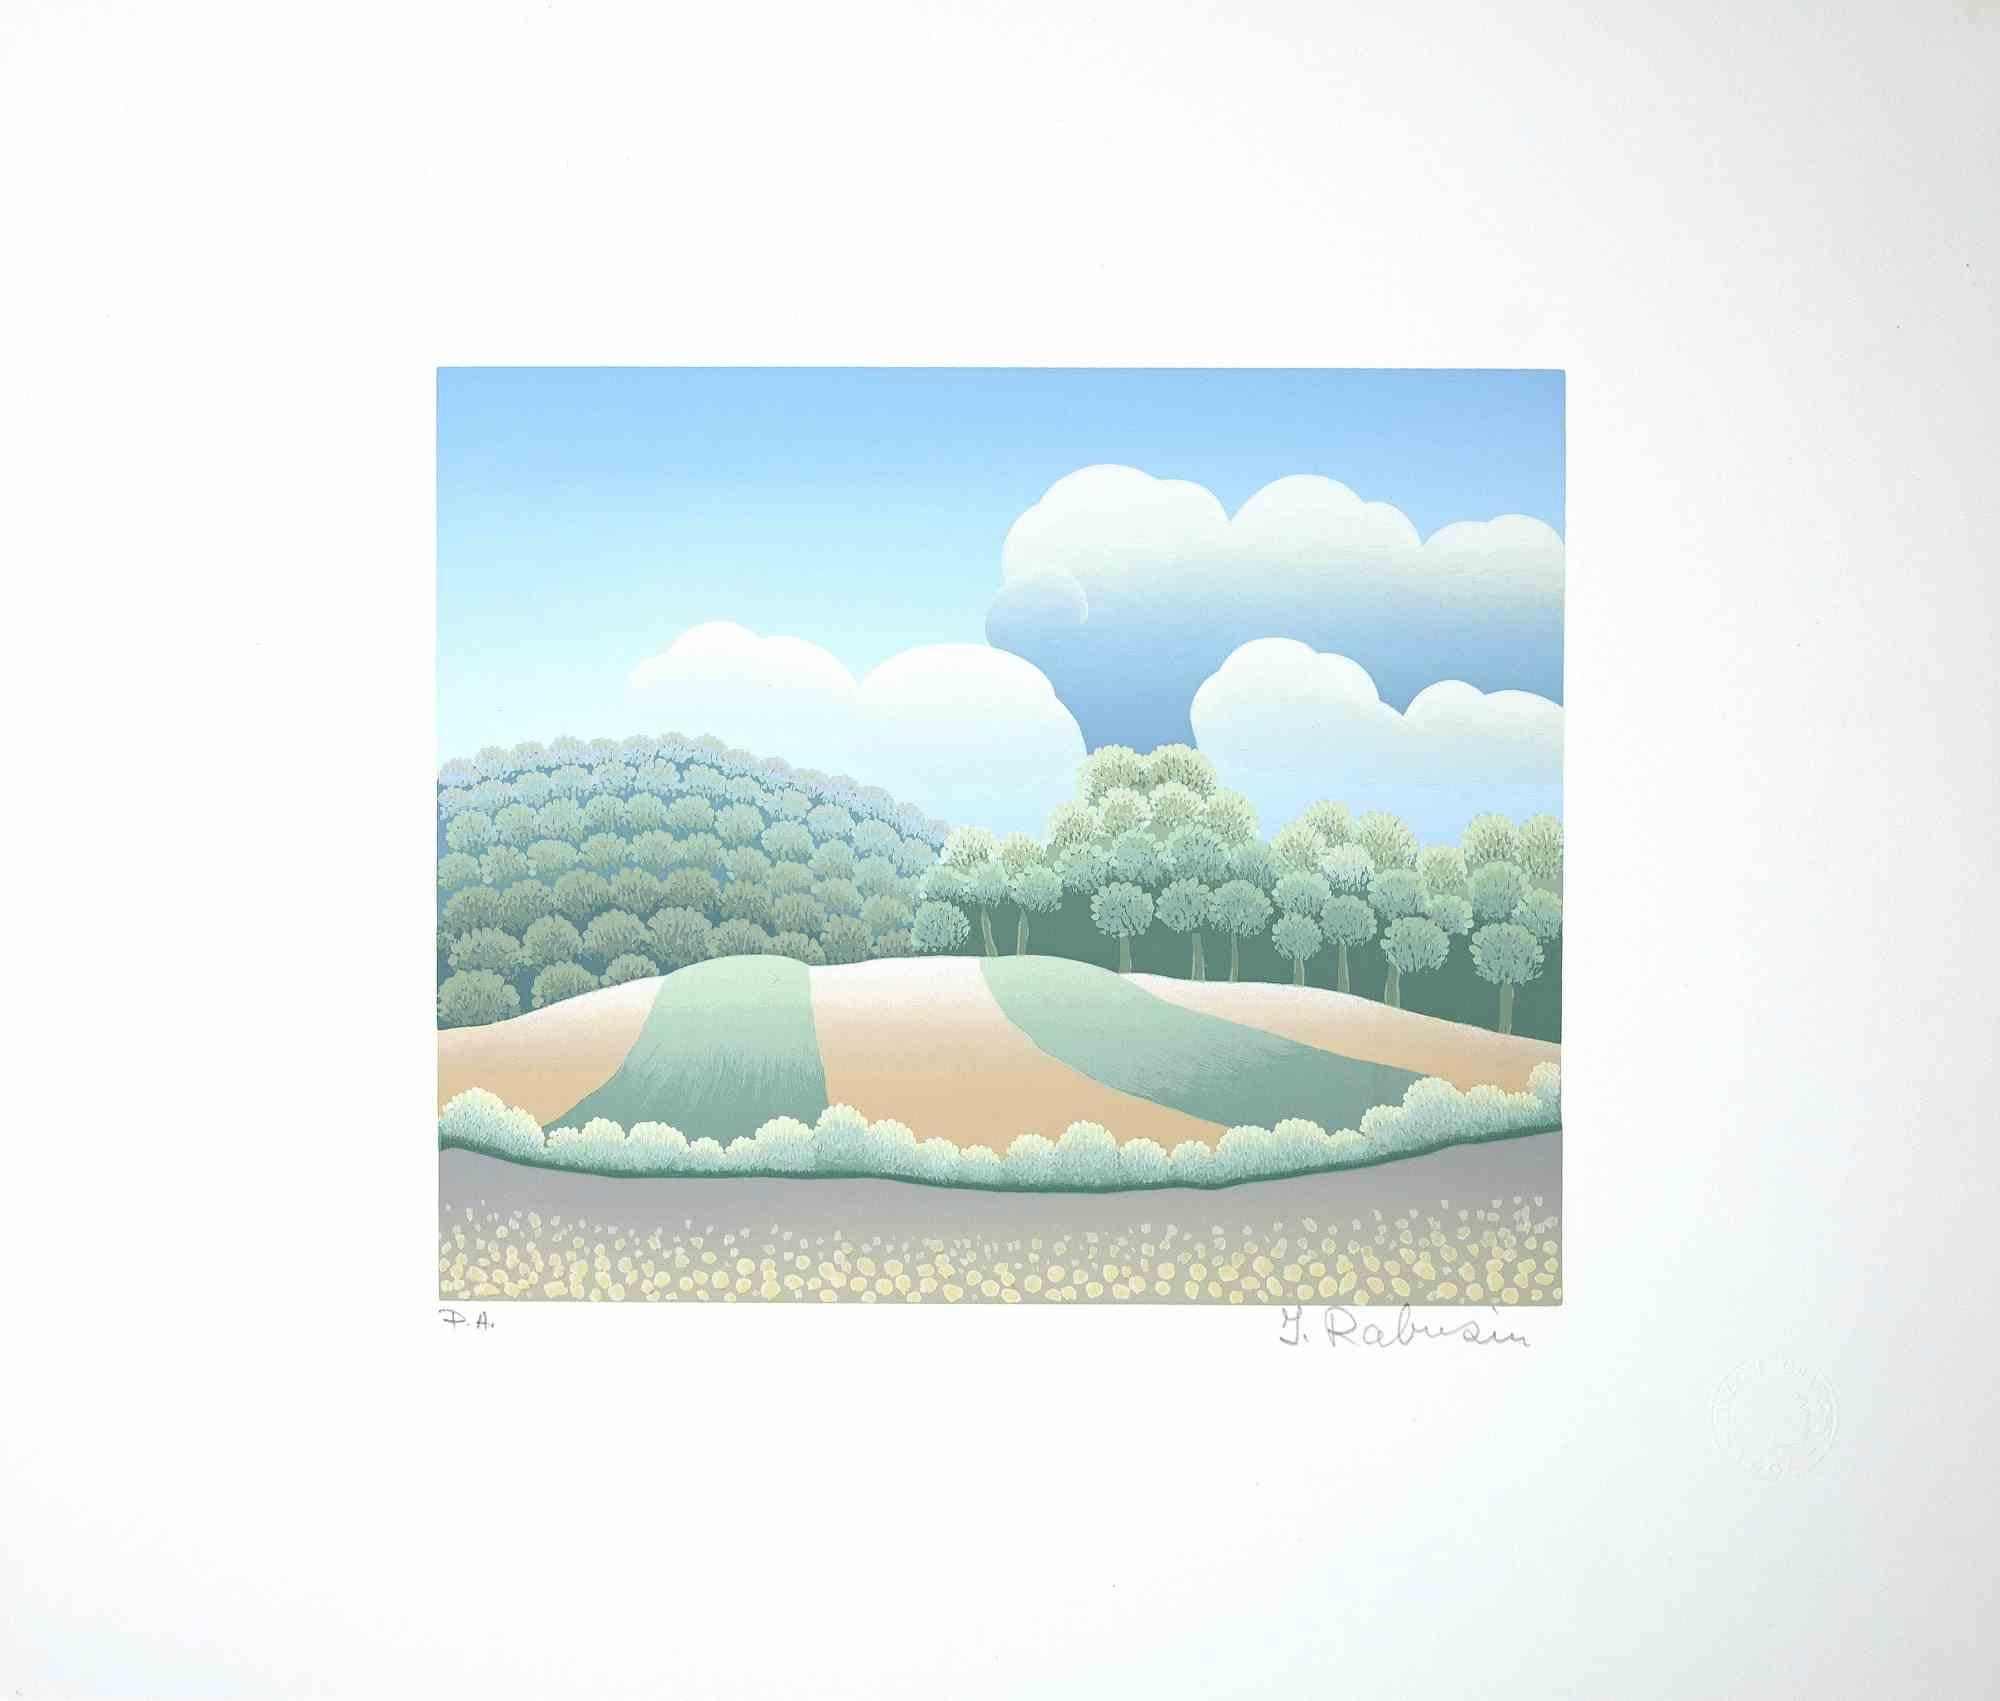 Landscape ist ein originaler farbiger Siebdruck auf Papier, der von Ivan Rabuzin in den 1990er Jahren realisiert wurde.

Handsigniert mit Bleistift am unteren Rand.  

Ausgezeichnete Bedingungen. 

Dieser sehr schöne Druck, der eine Landschaft